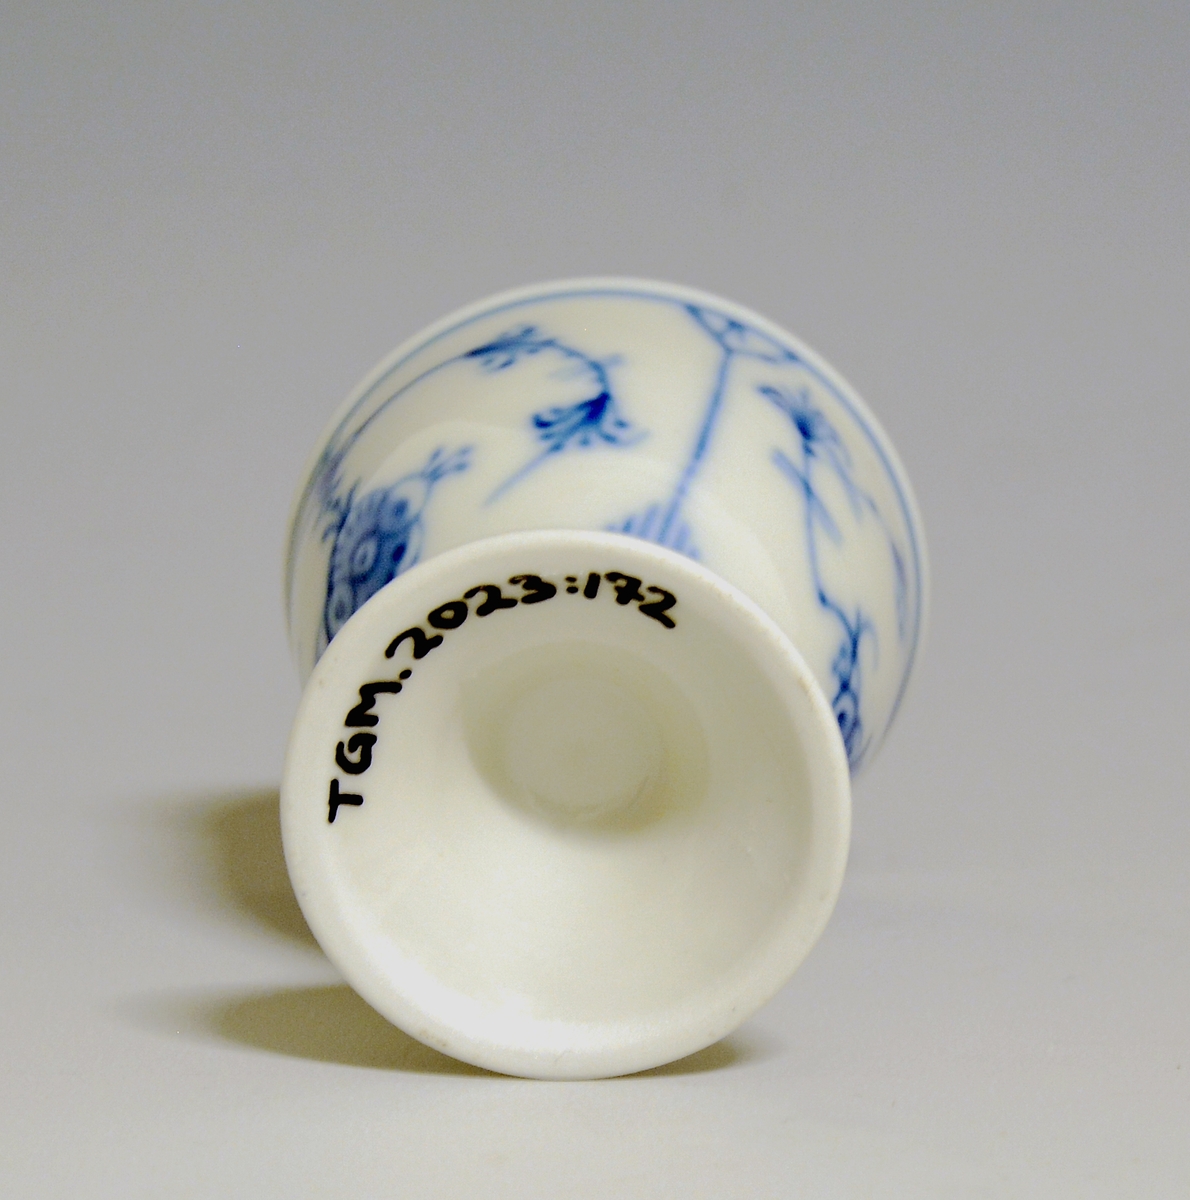 Eggeglass, med stett og hvit glasur. Dekorert med håndmalt stråmønster i blå underglasurdekor.

Modell: 1552
Dekor: Stråmønster i blått.

Uten fabrikkmerke.